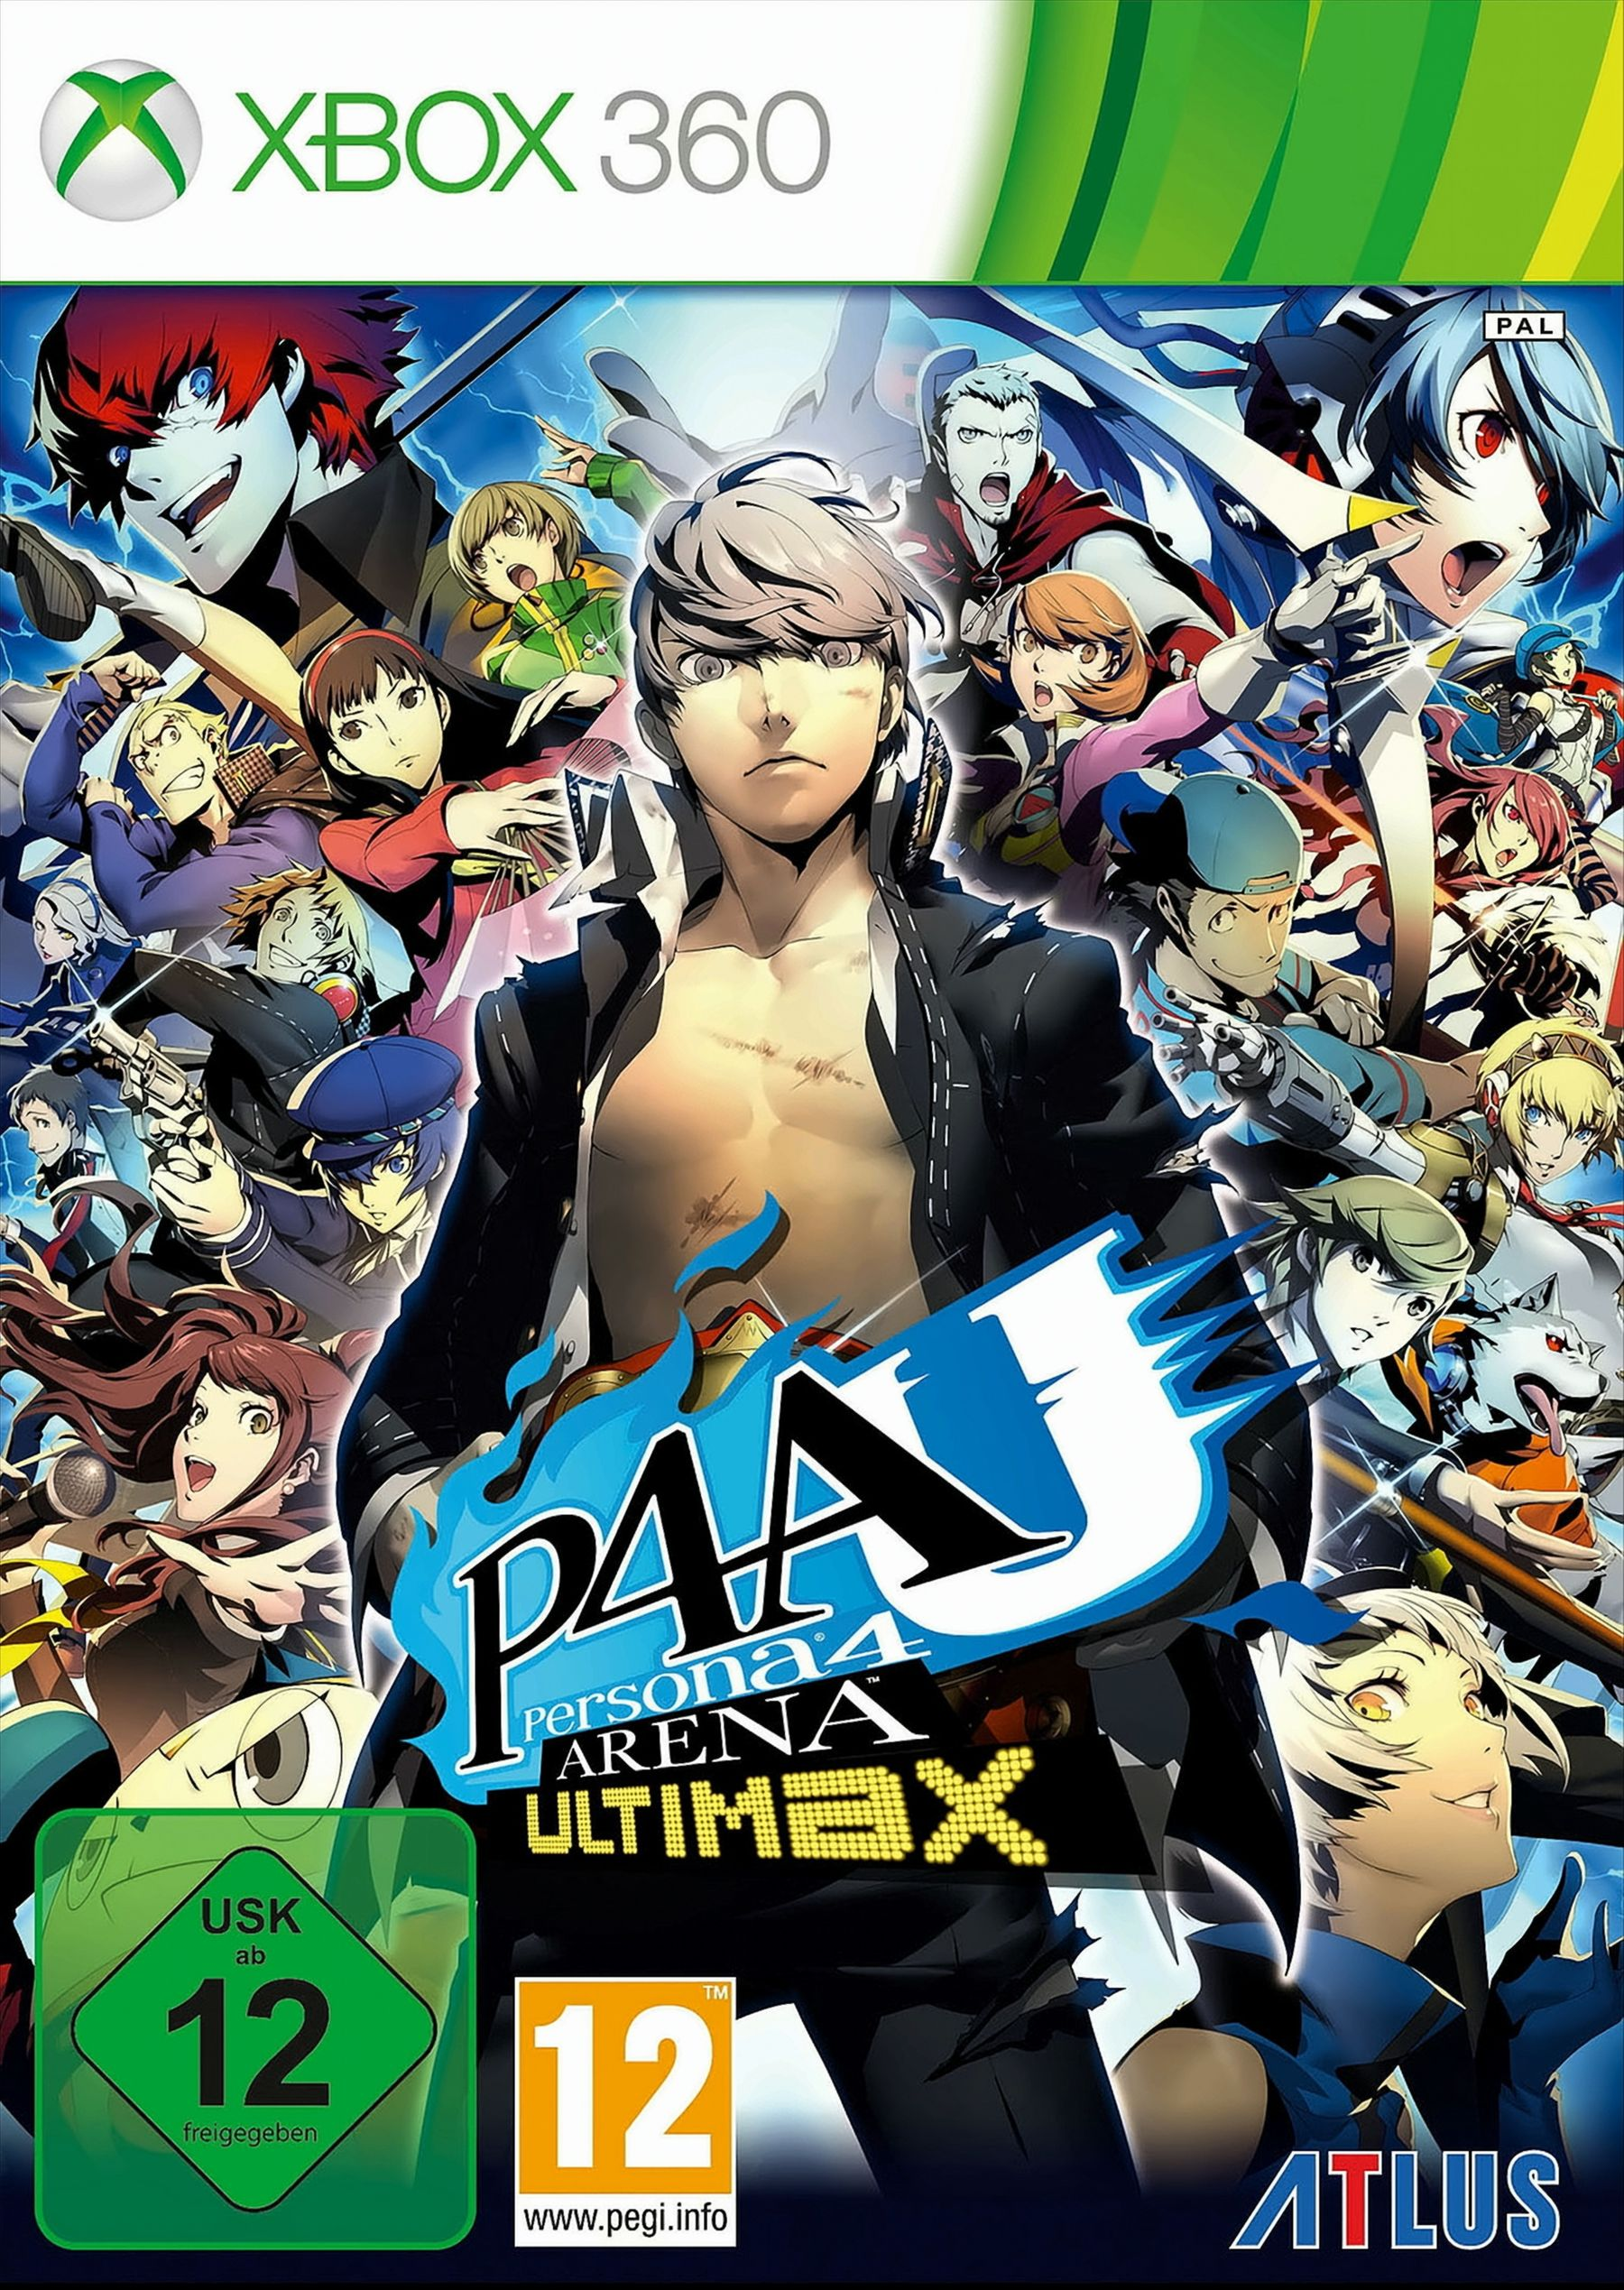 360] Ultimax 4 - Arena Persona [Xbox